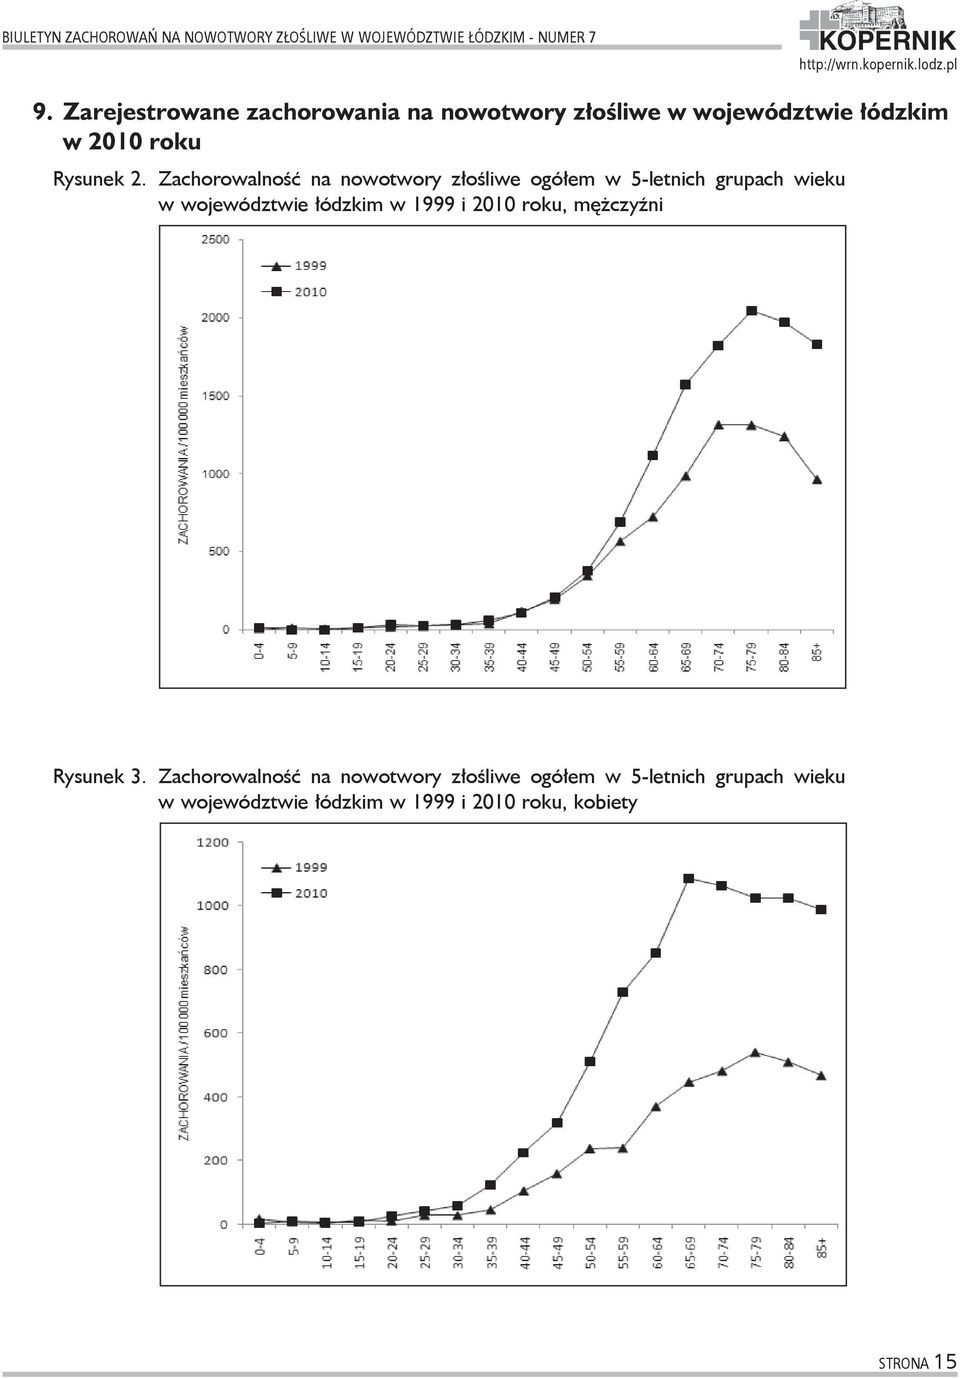 Zachorowalność na nowotwory złośliwe ogółem w 5-letnich grupach wieku w województwie łódzkim w 1999 i 2010 roku,